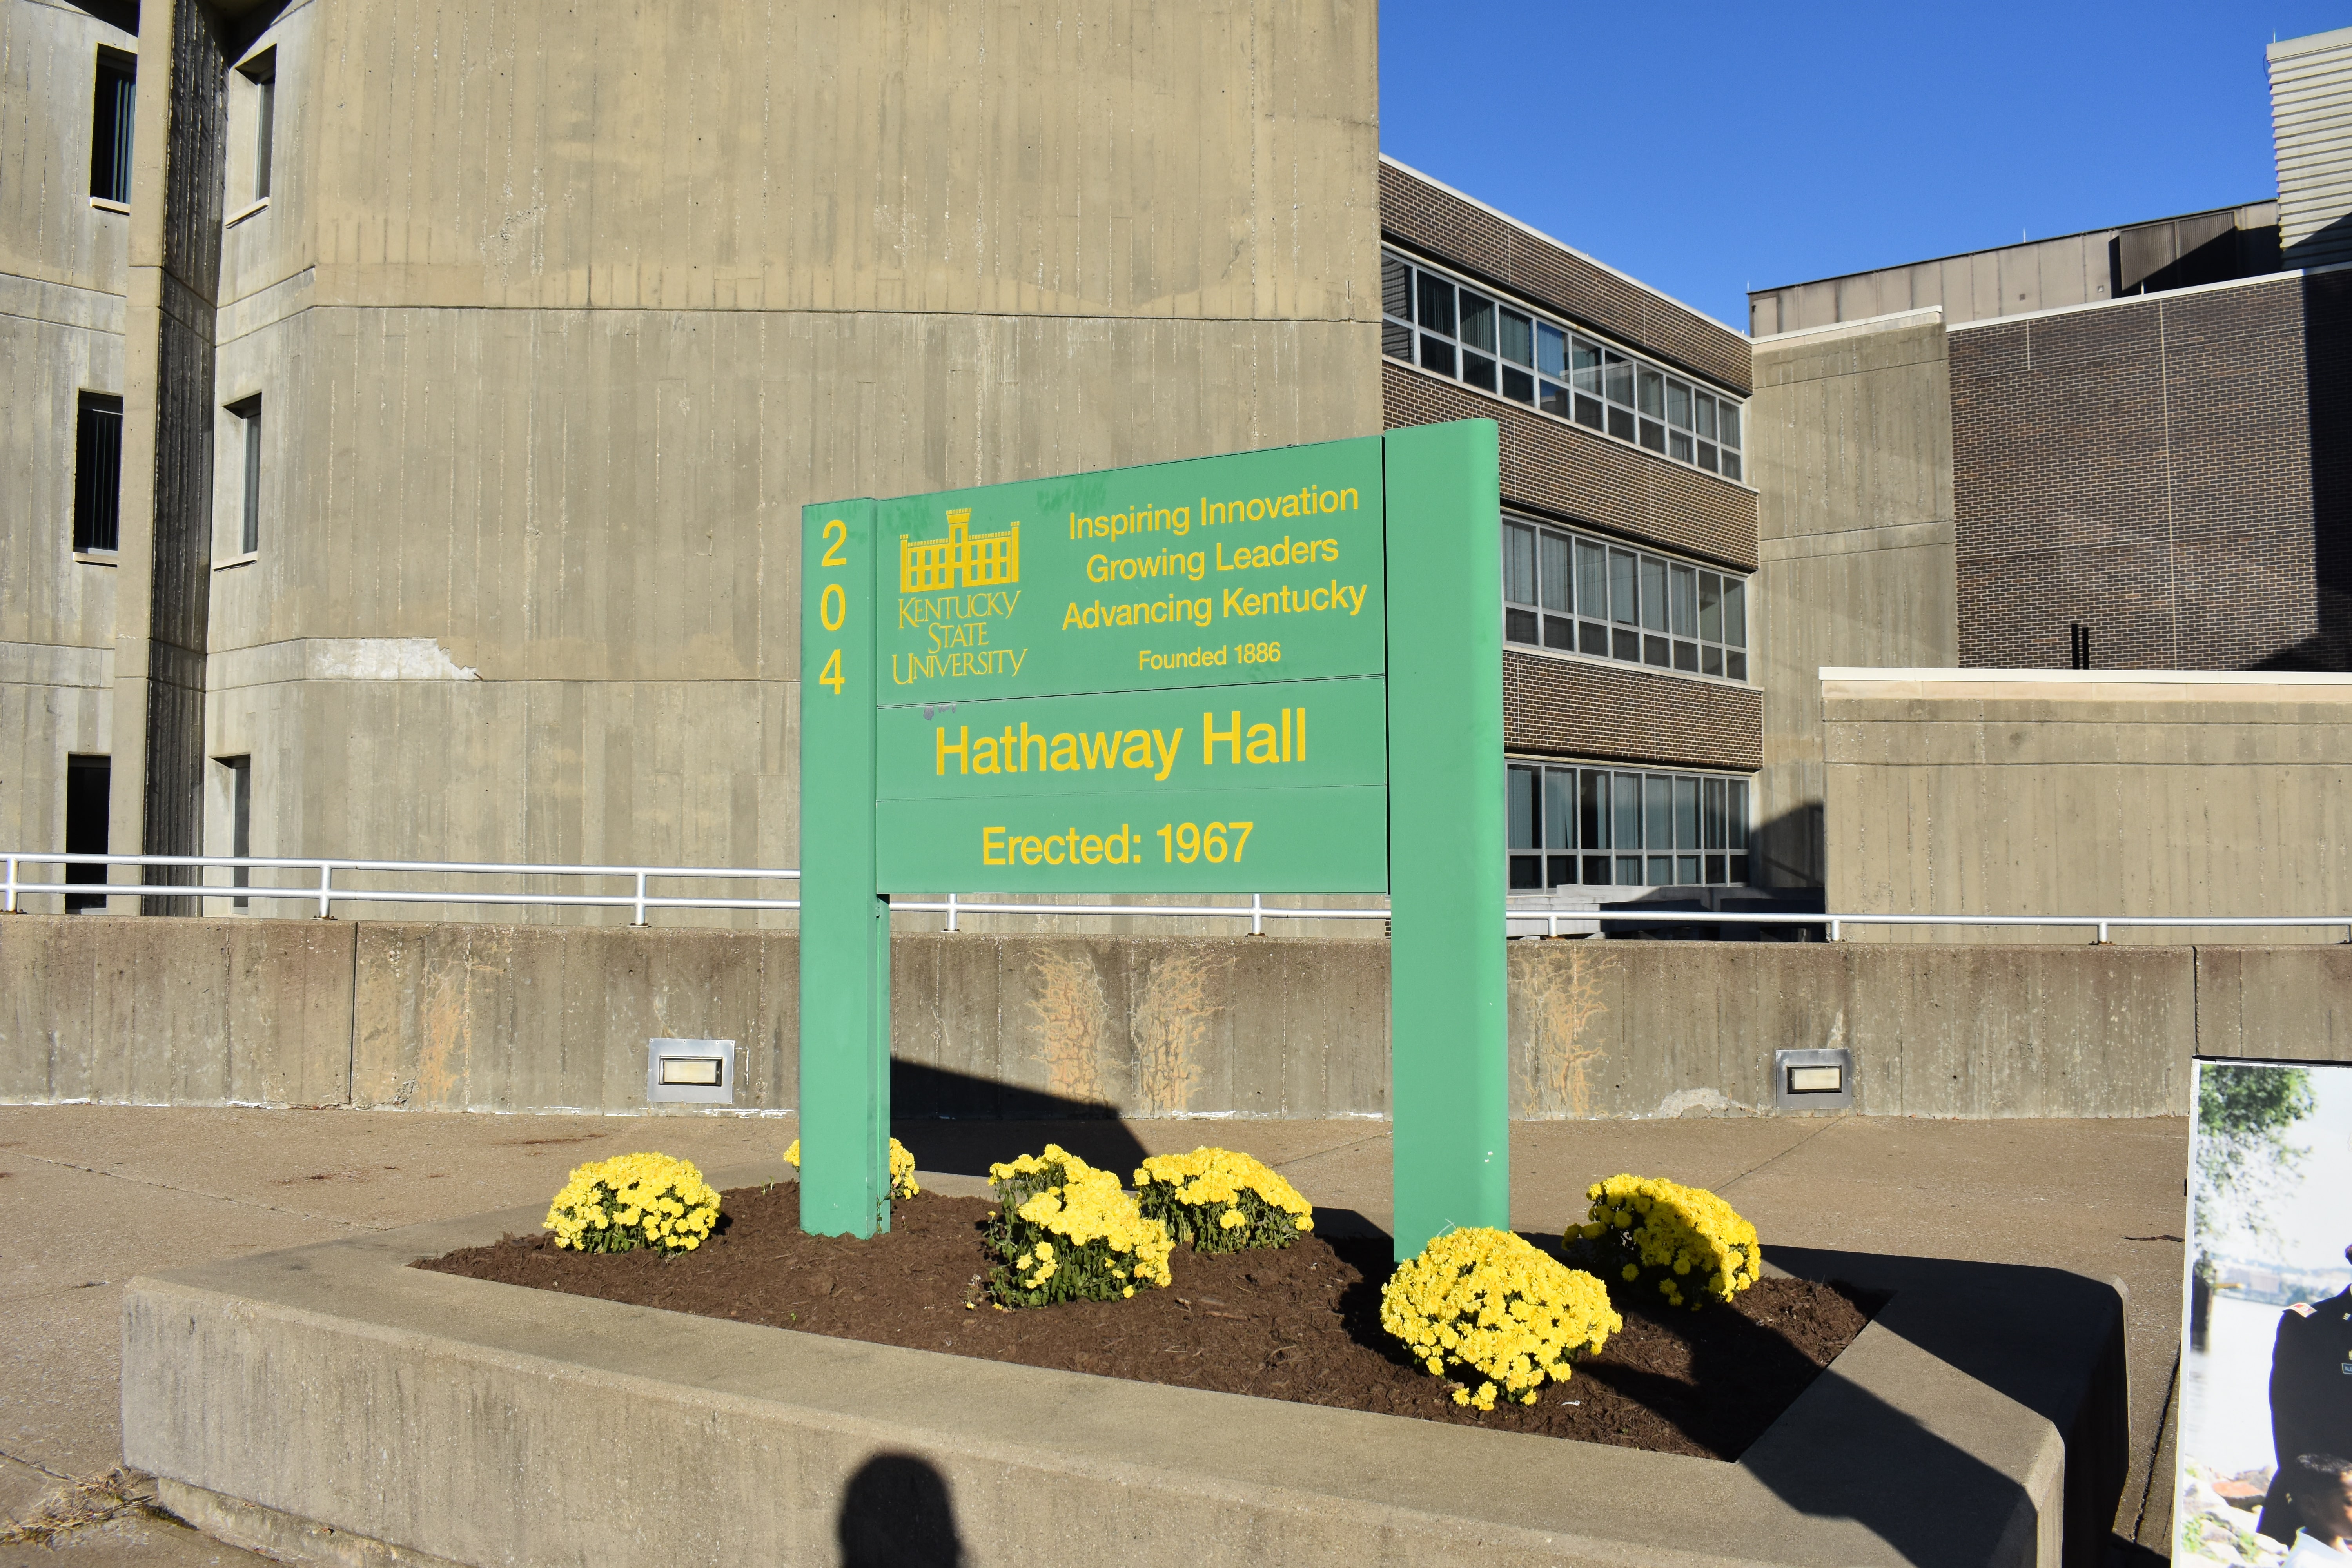 Hathaway Hall